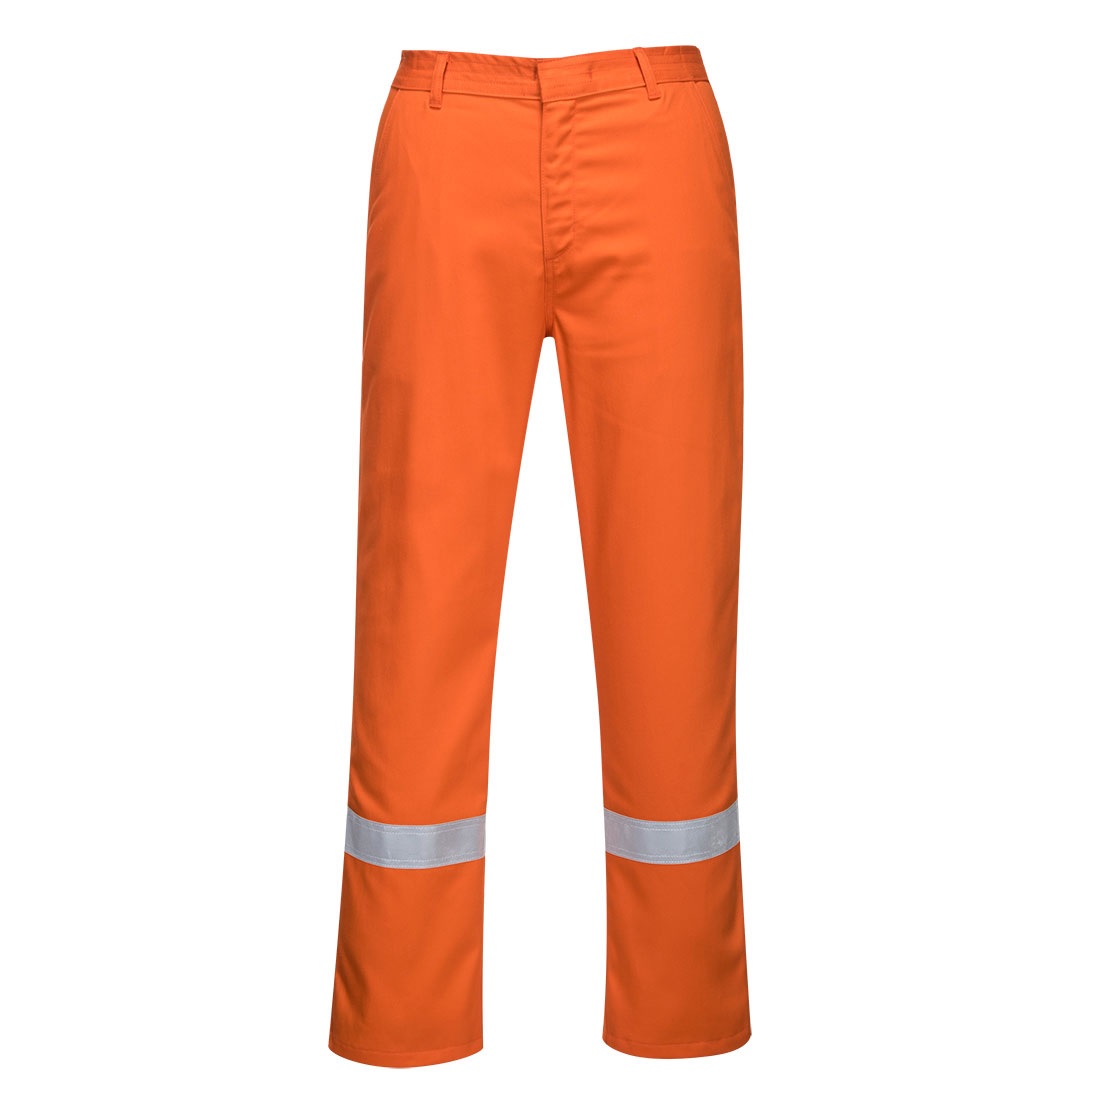 Pantalon-ignifugo-naranja-con-cinta-reflectiva-central-de-suministrosgs.jpg